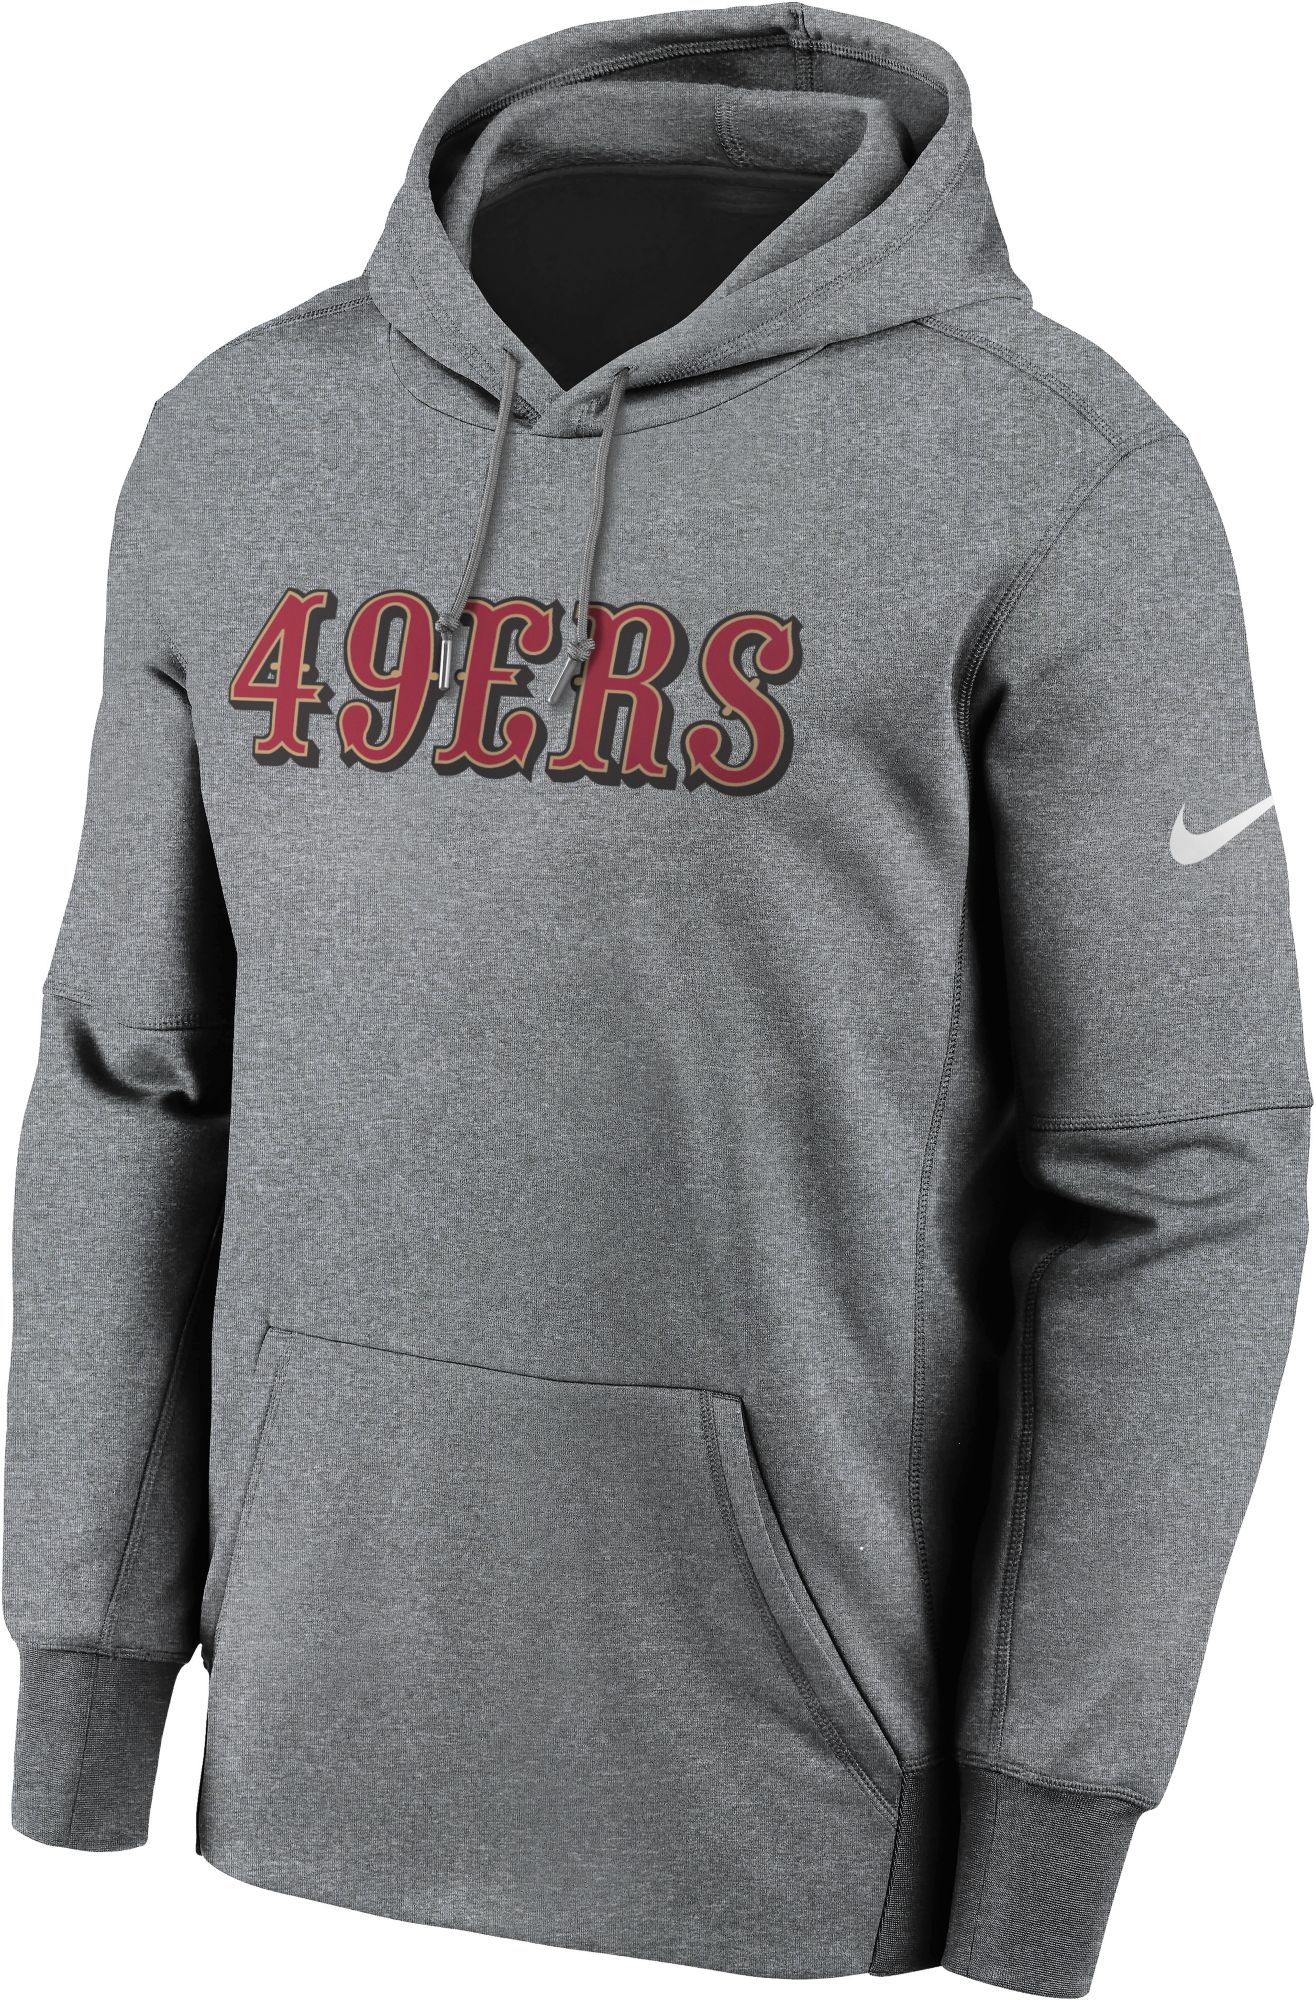 49ers therma fit hoodie